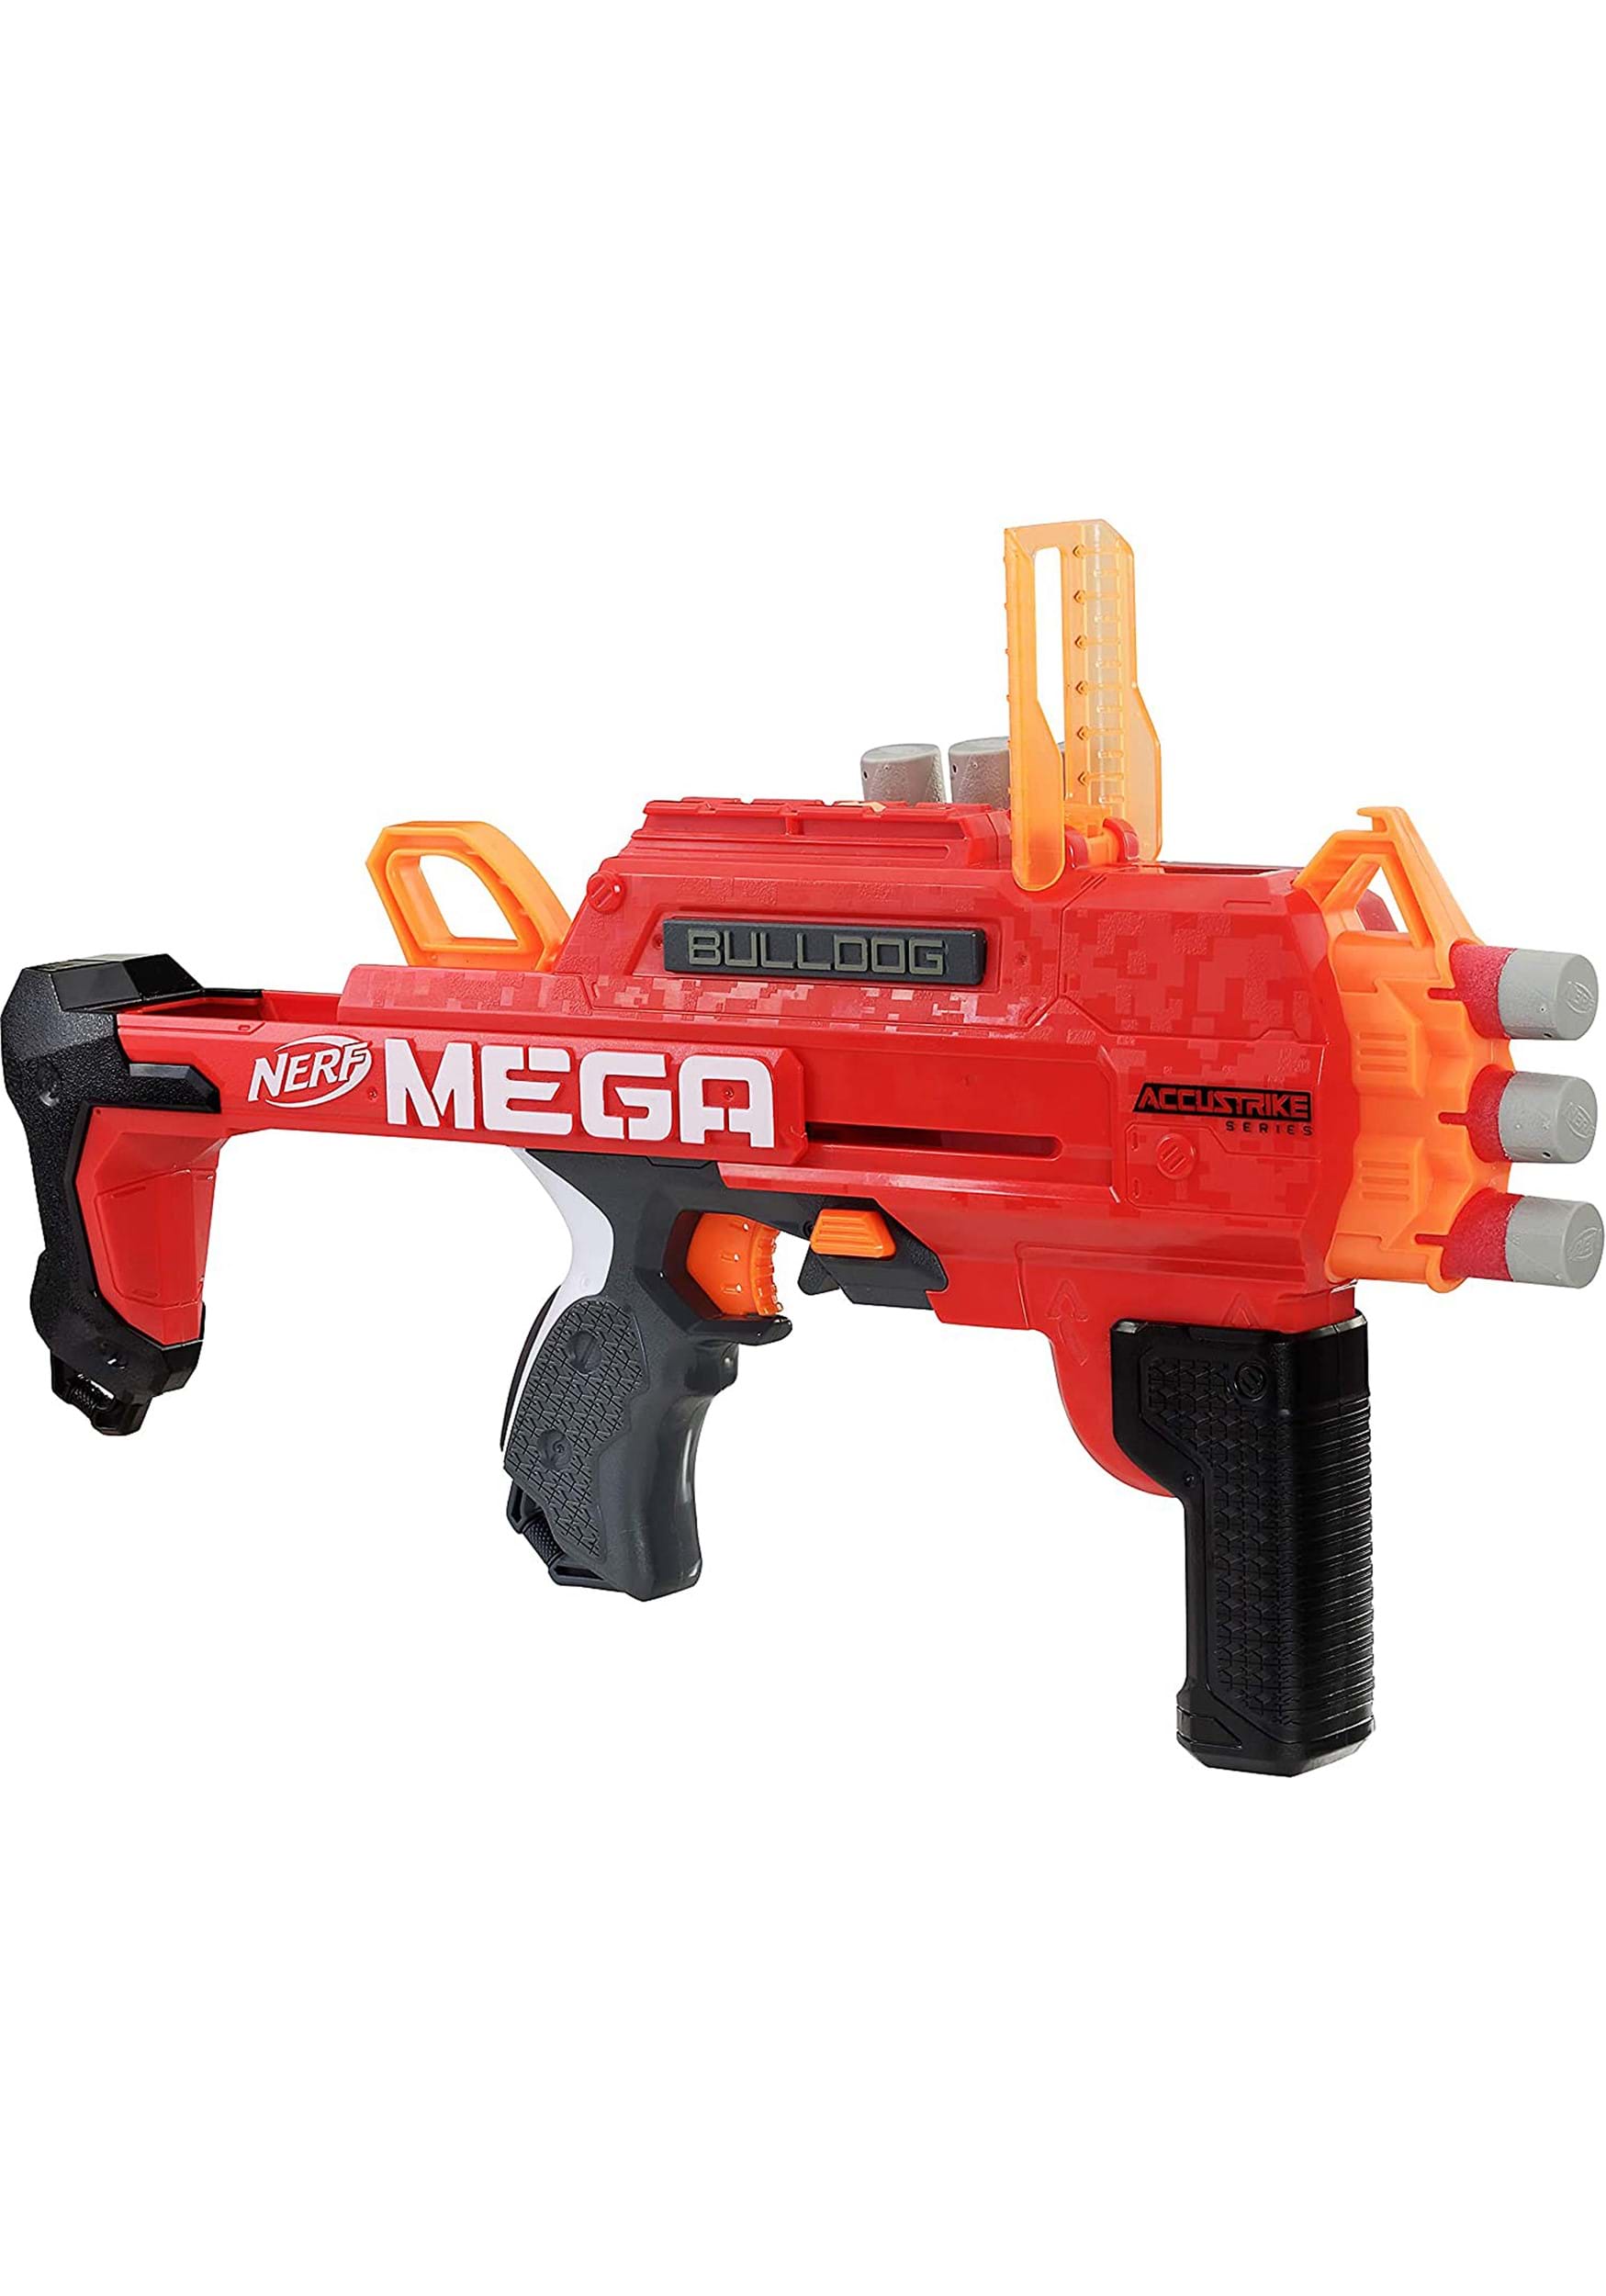 Nerf Mega Bulldog Hasbro Blaster